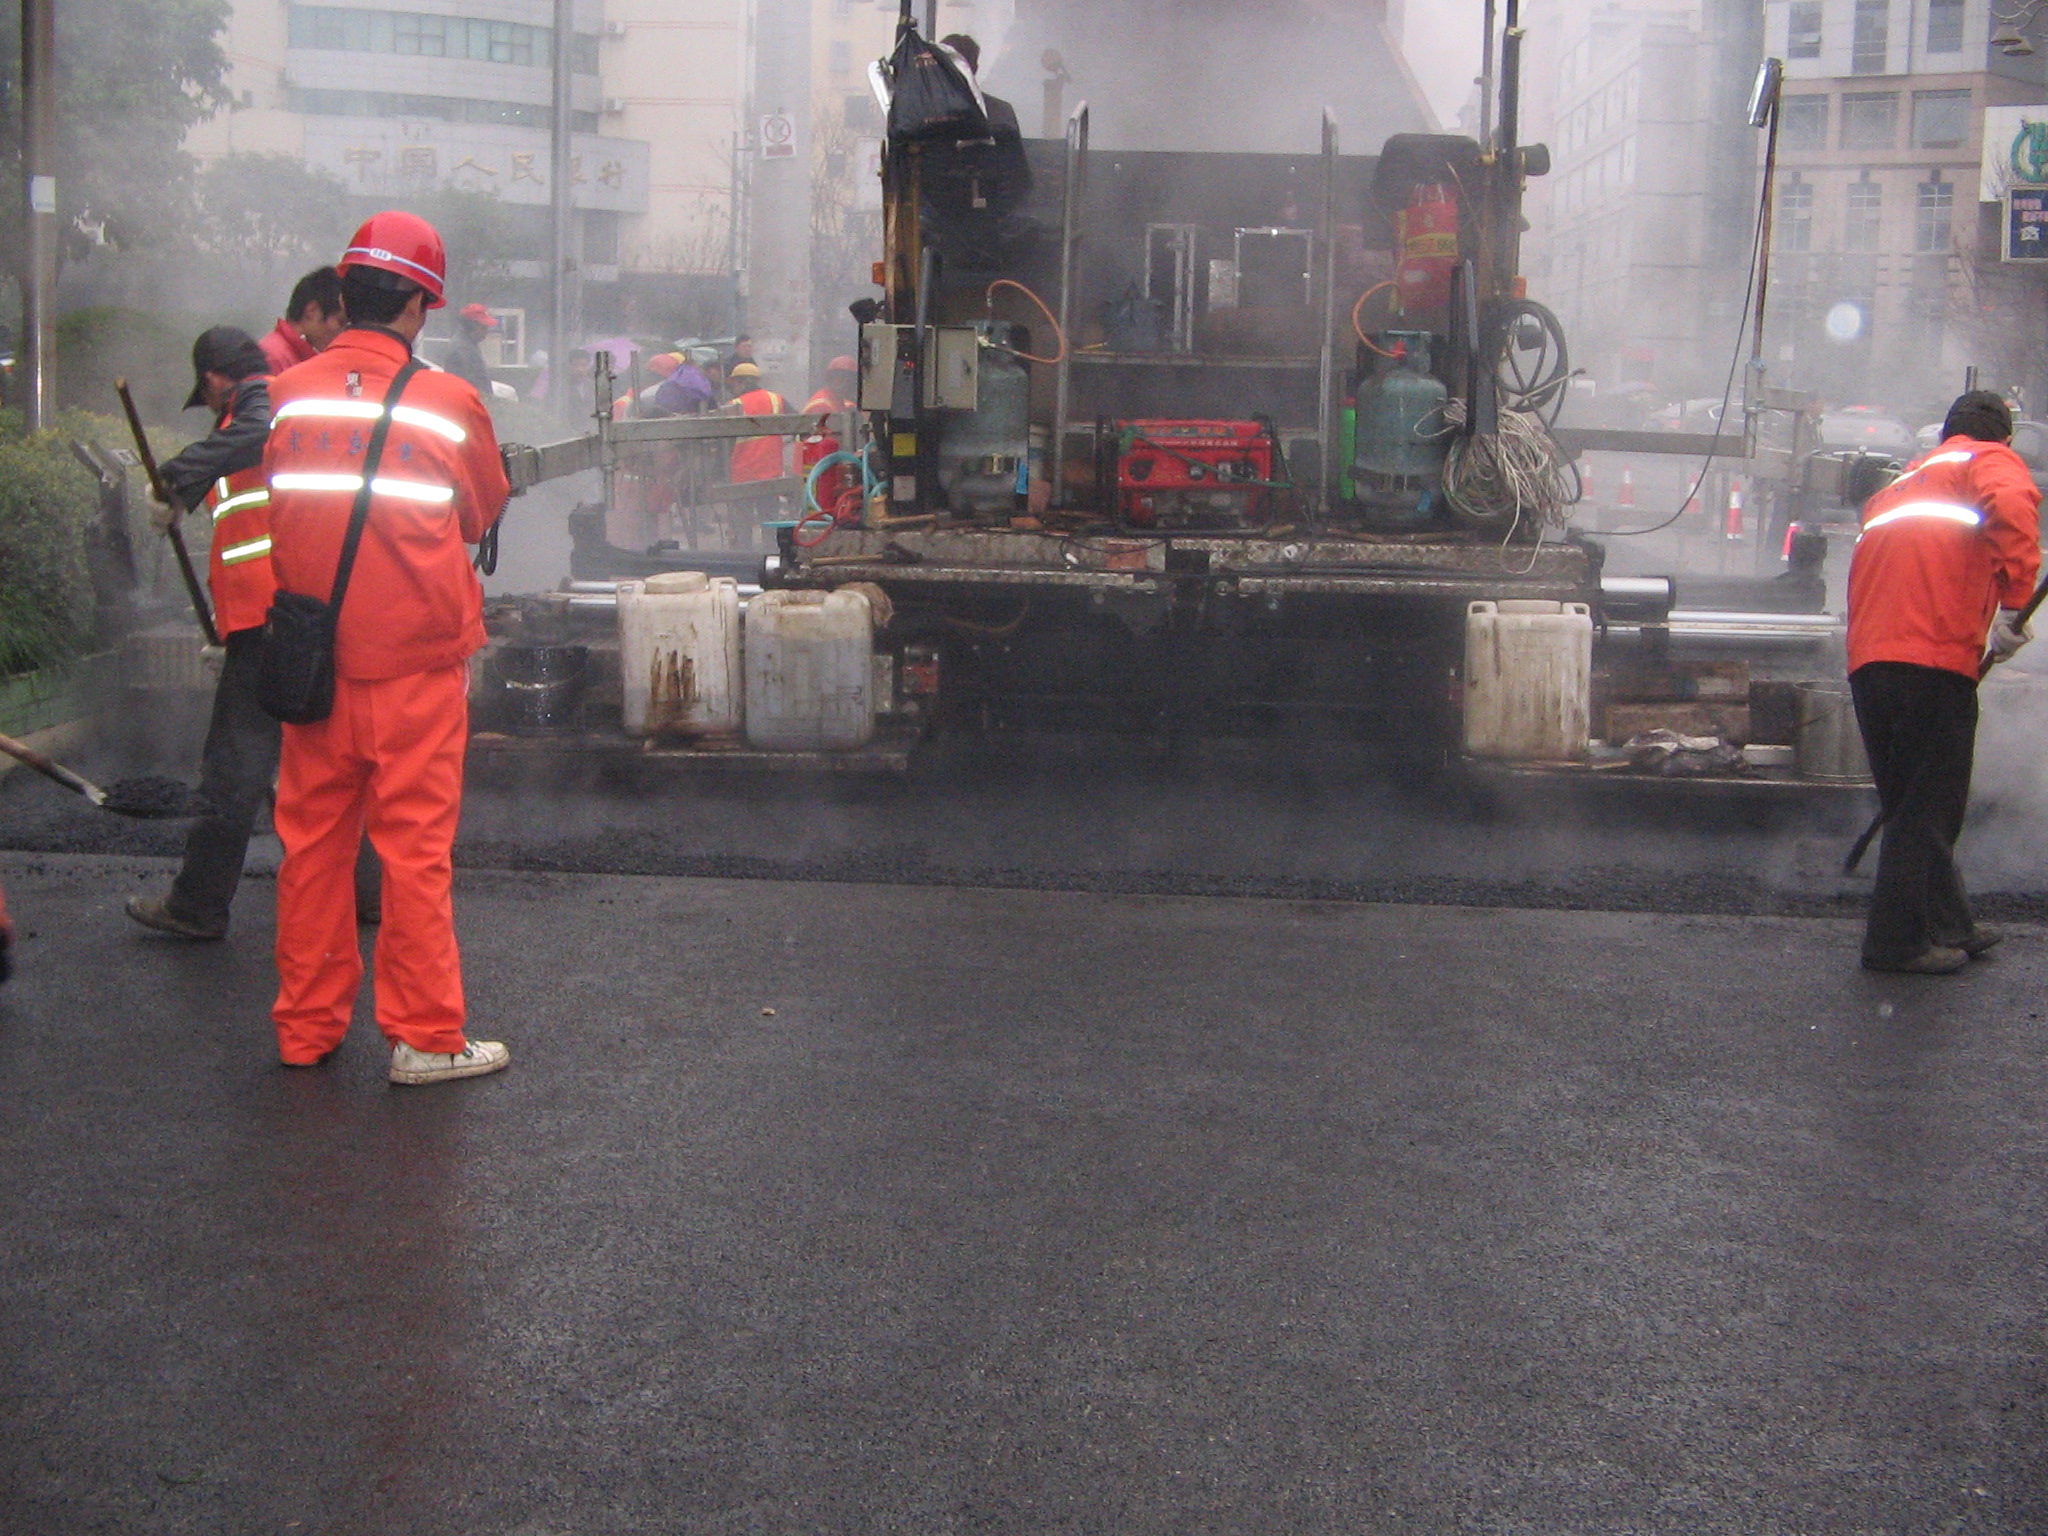 重庆沥青路面施工公司、沥青路面施工公司